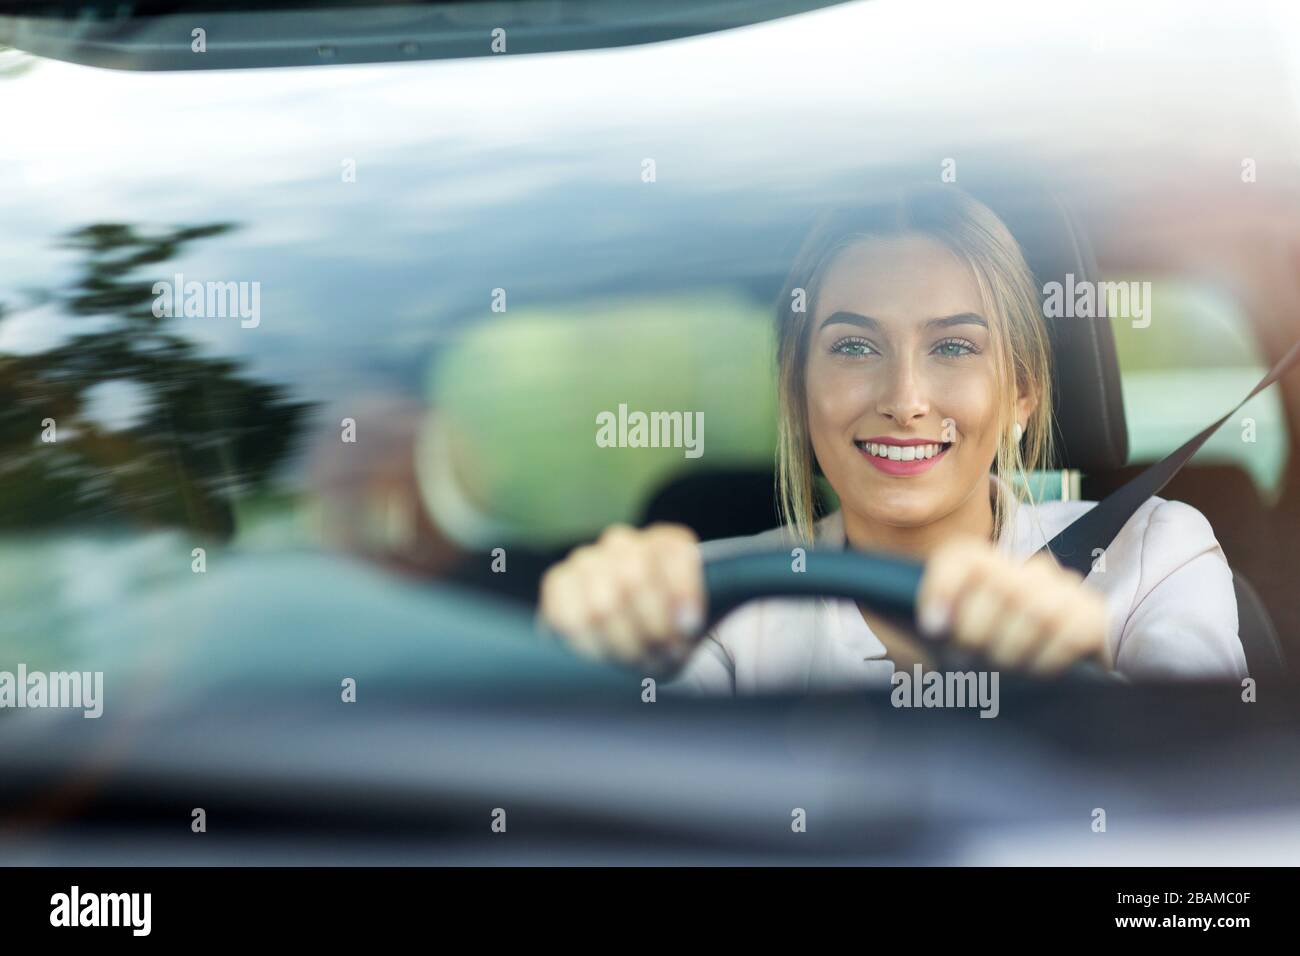 Junge Frau mit verbundenen Augen am Steuer eines Autos foto de